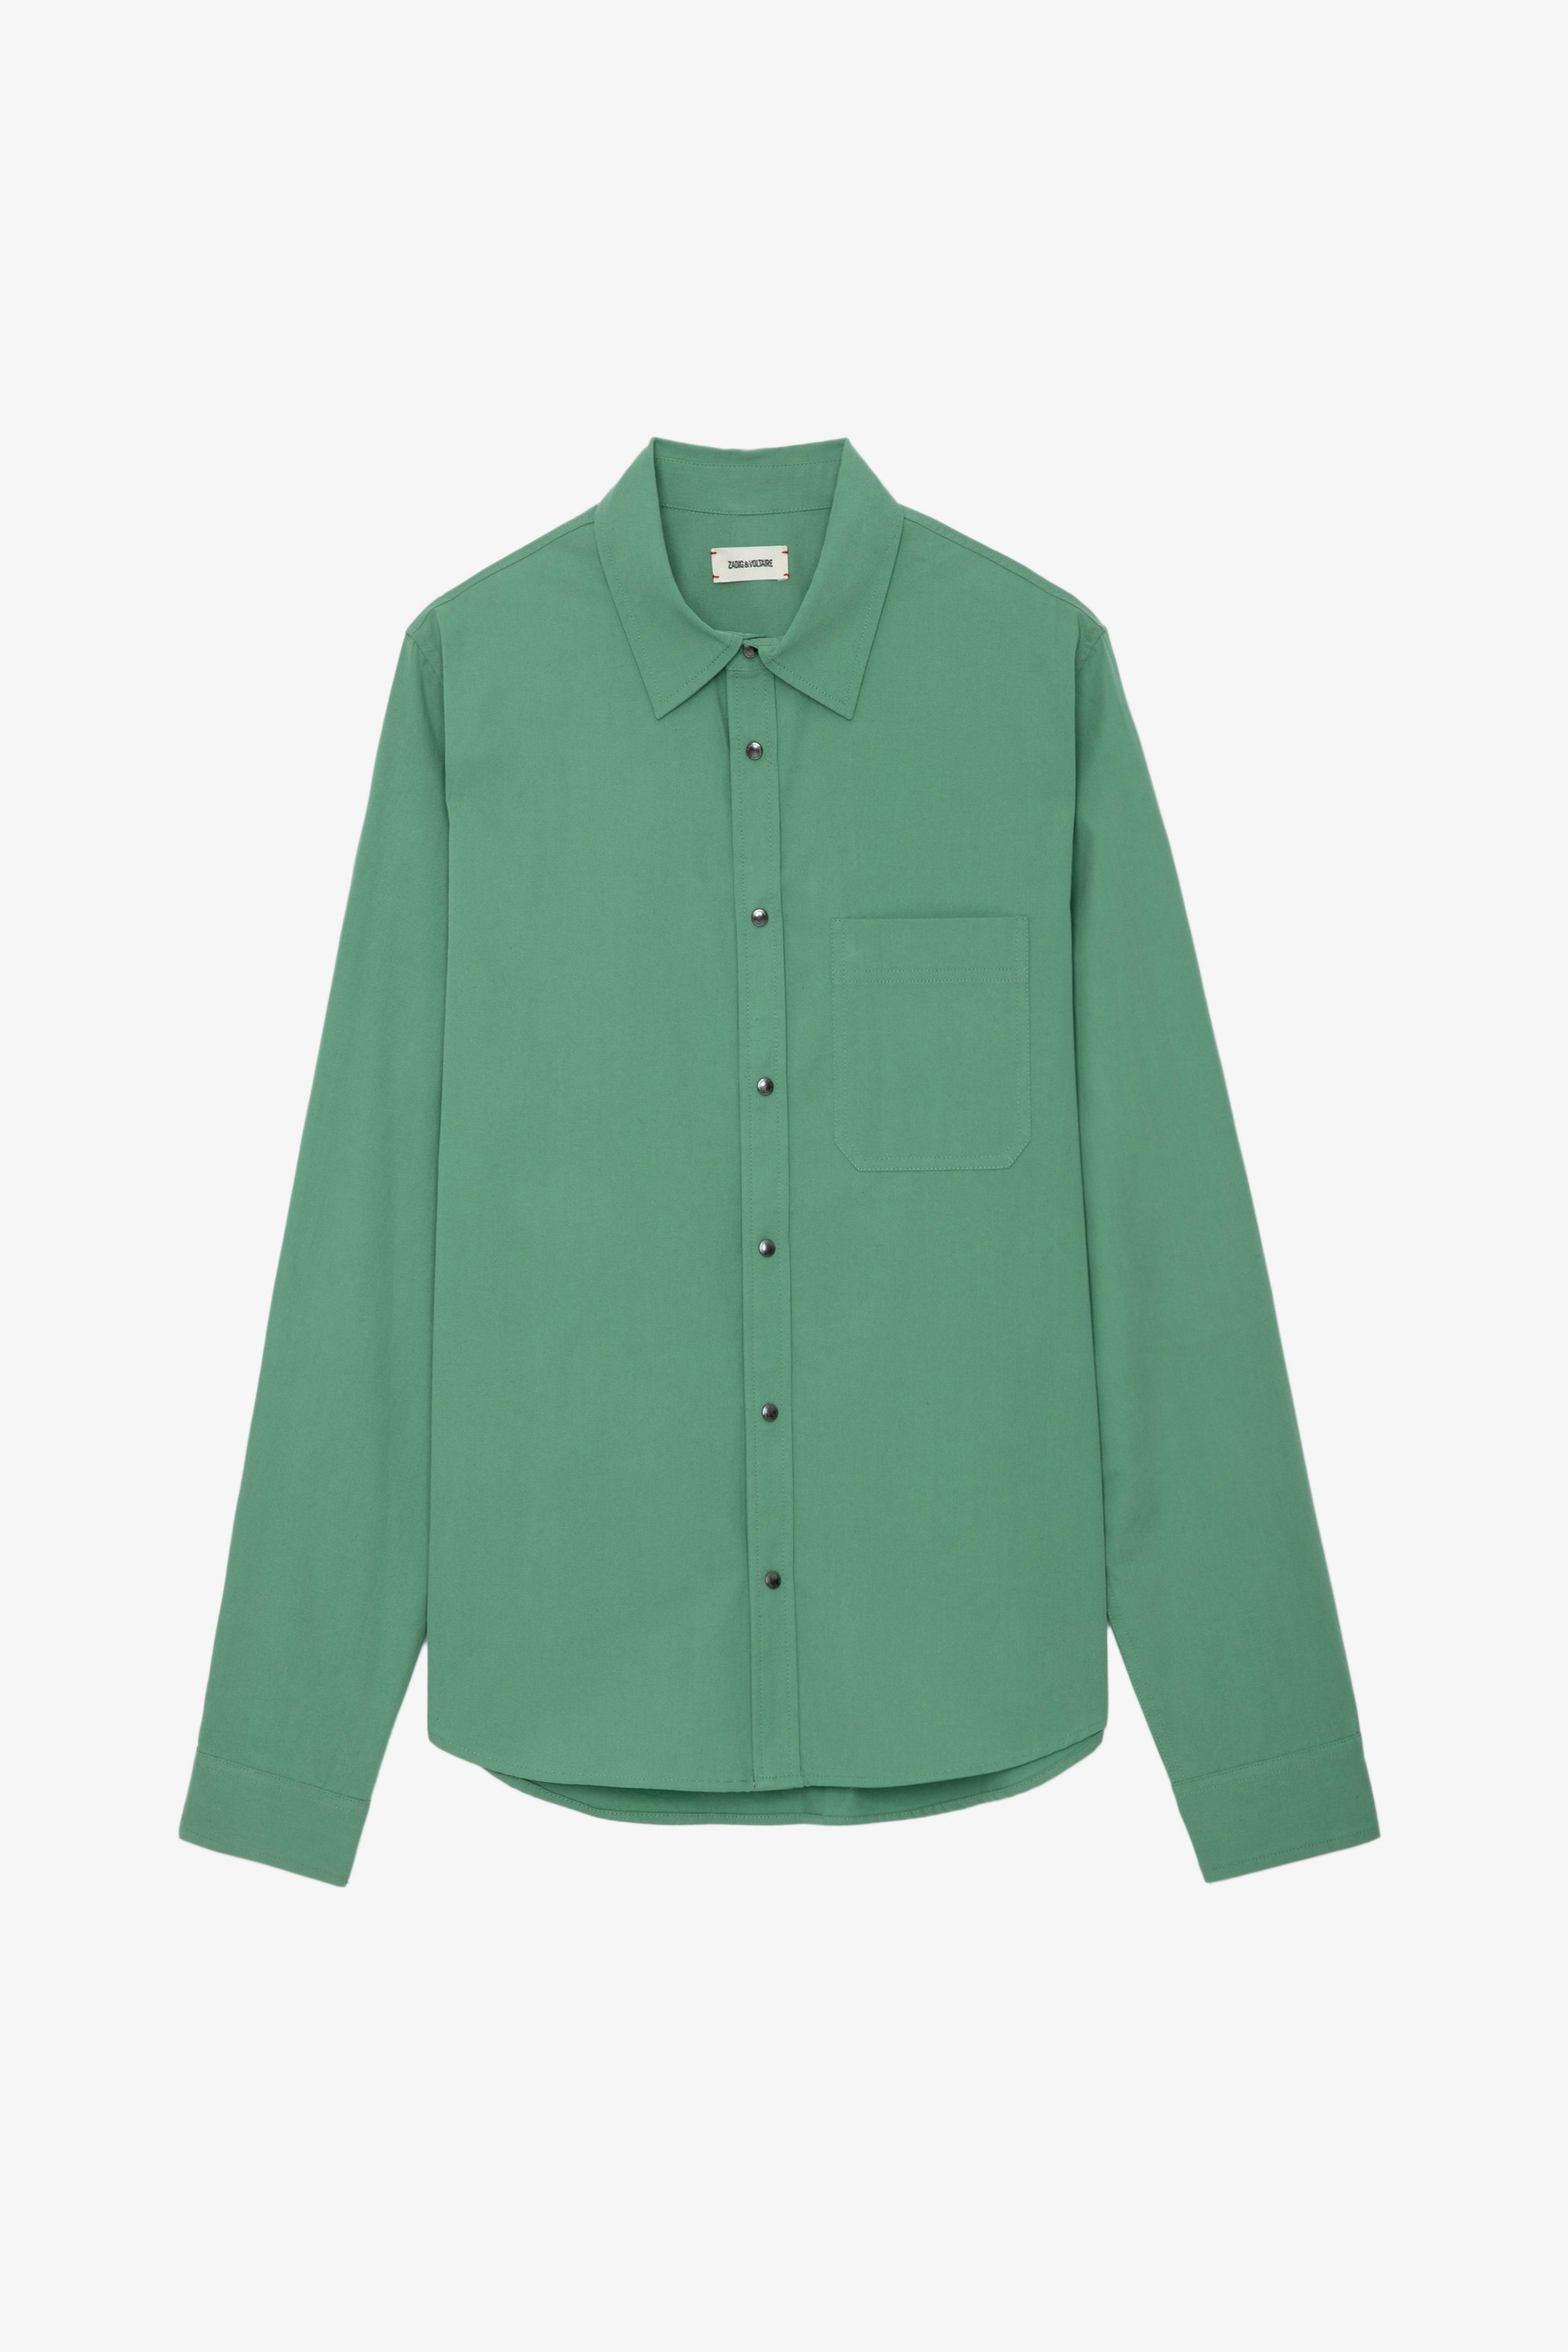 Camisa Stan - Camisa verde de sarga de algodón con bolsillo de parche y detalles decorativos de Humberto Cruz en la espalda.